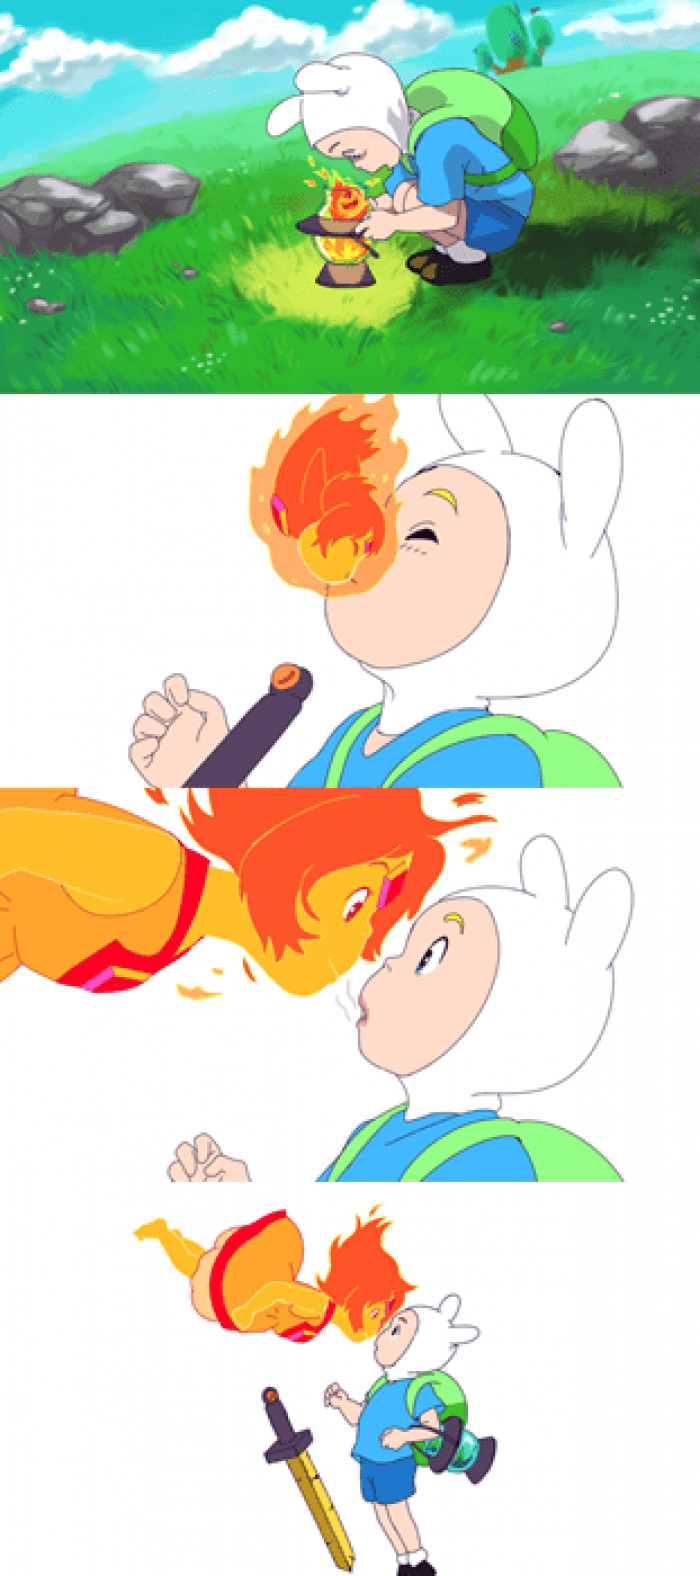 1. Adventure Time + Ponyo